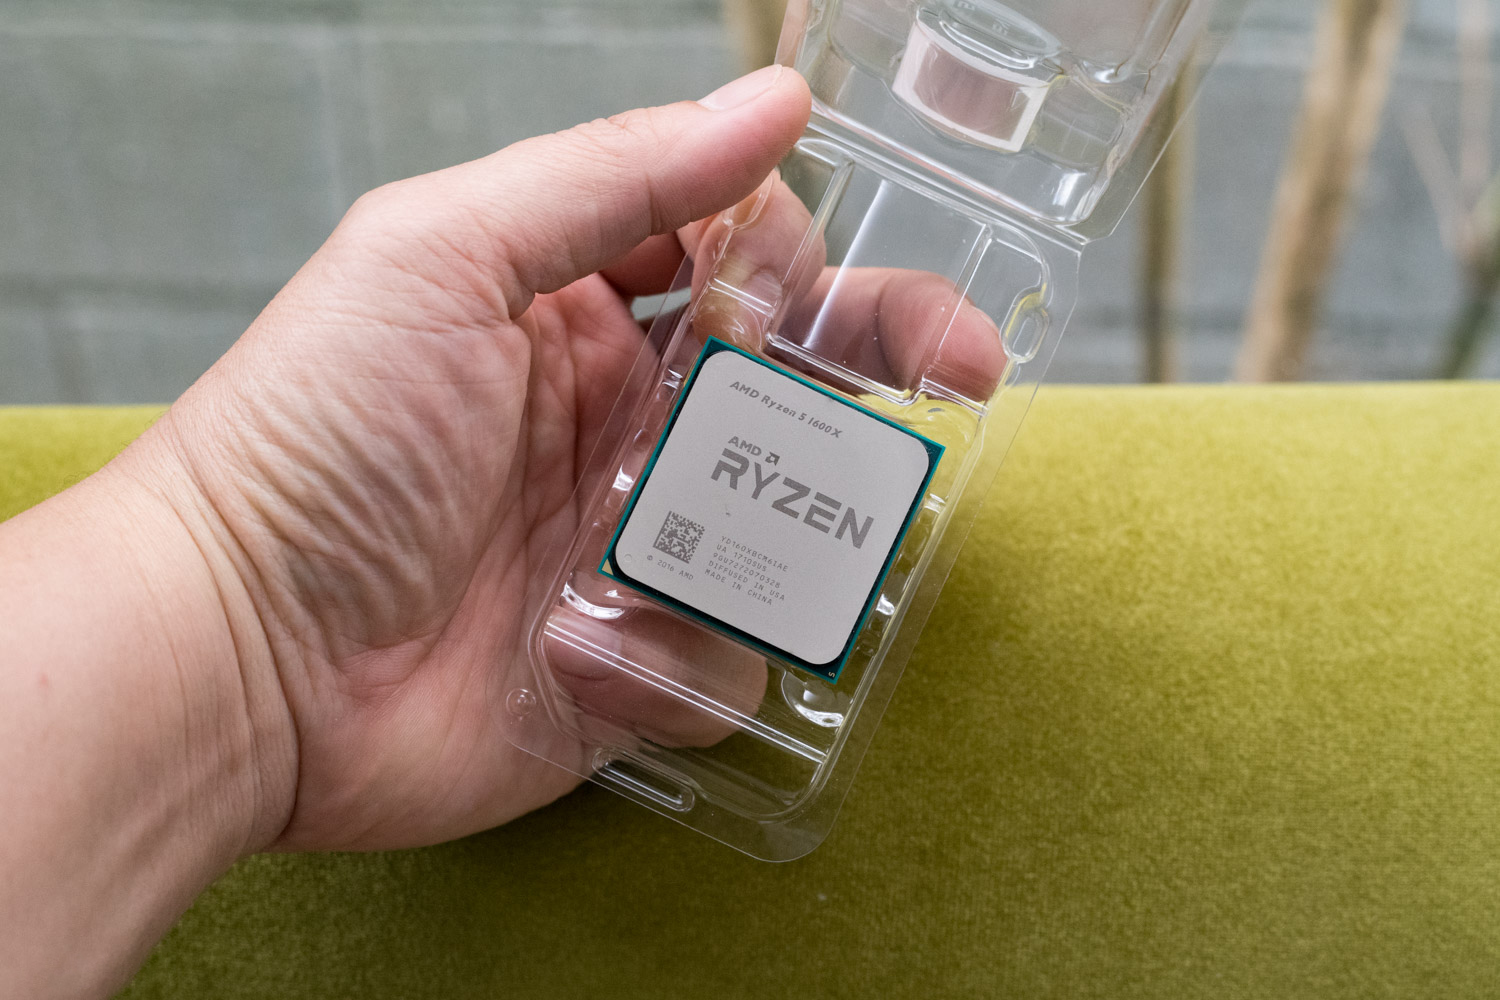 CPU AMD Ryzen 5 1600X